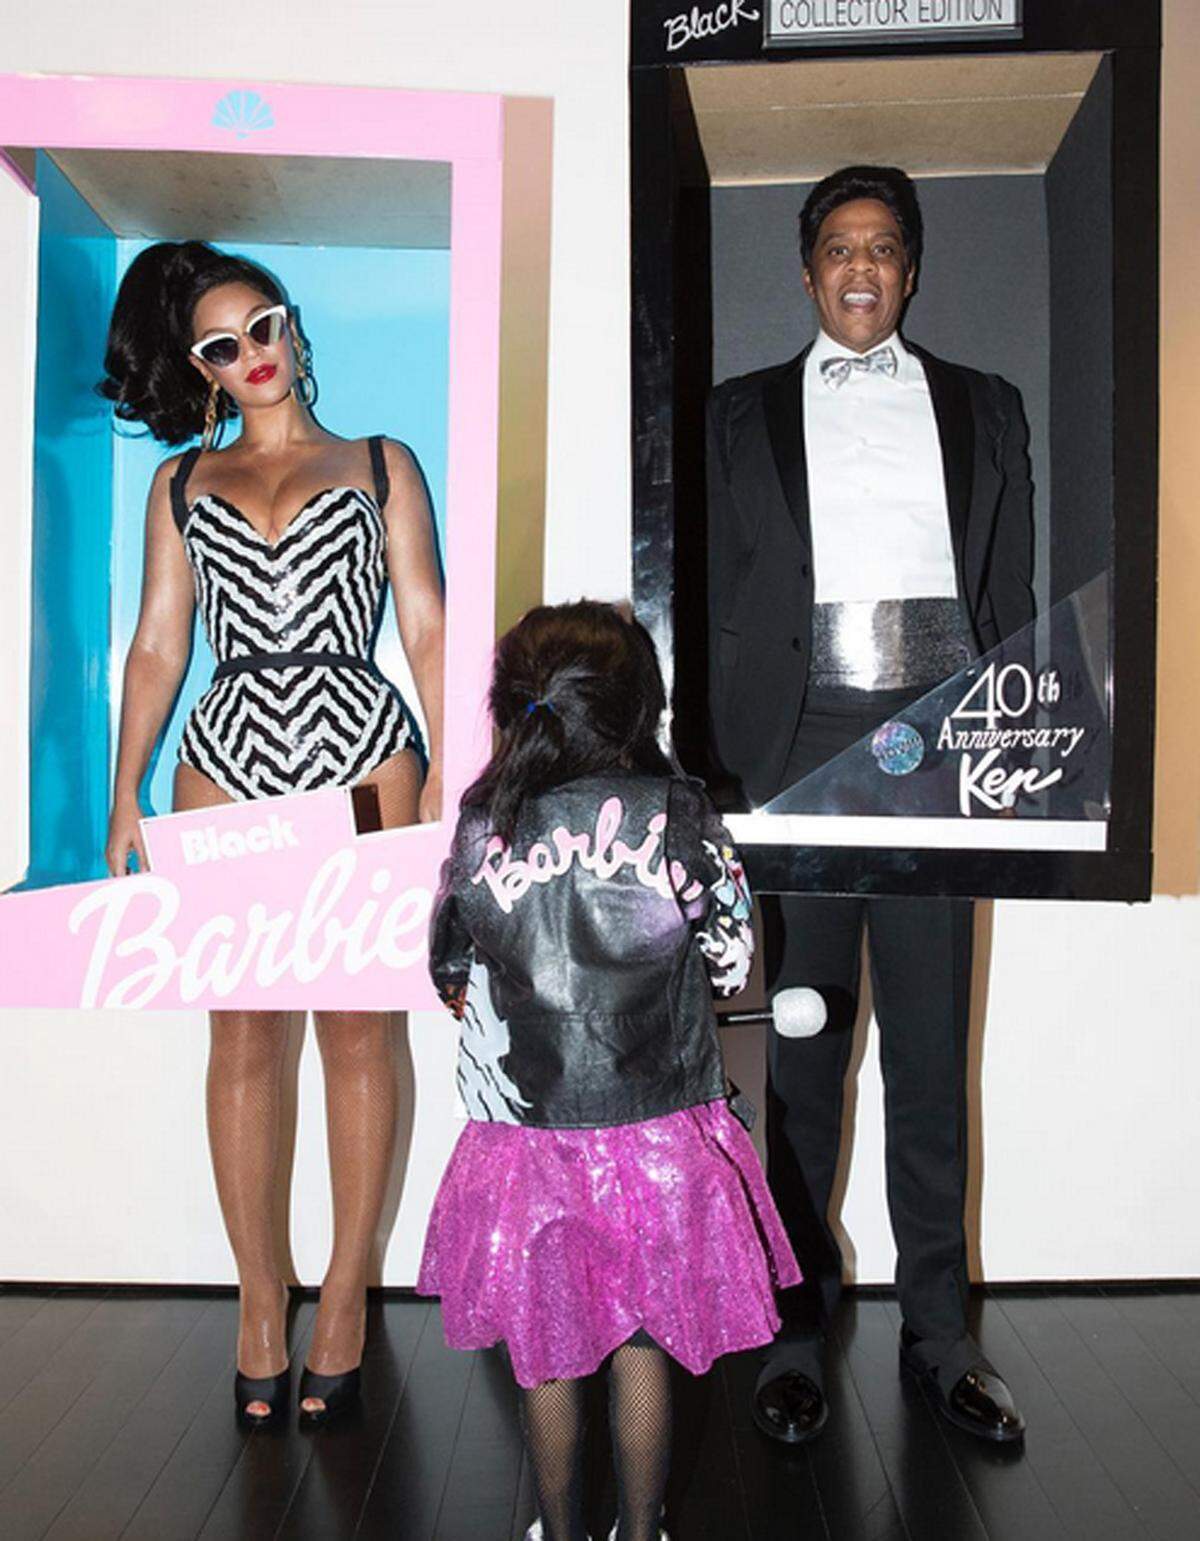 Als Barbie und Ken inszenierten sich Beyonce und Jay-Z in diesem Jahr. Fazit: Die beiden stahlen Töchterchen Ivy ganz schön die Show.